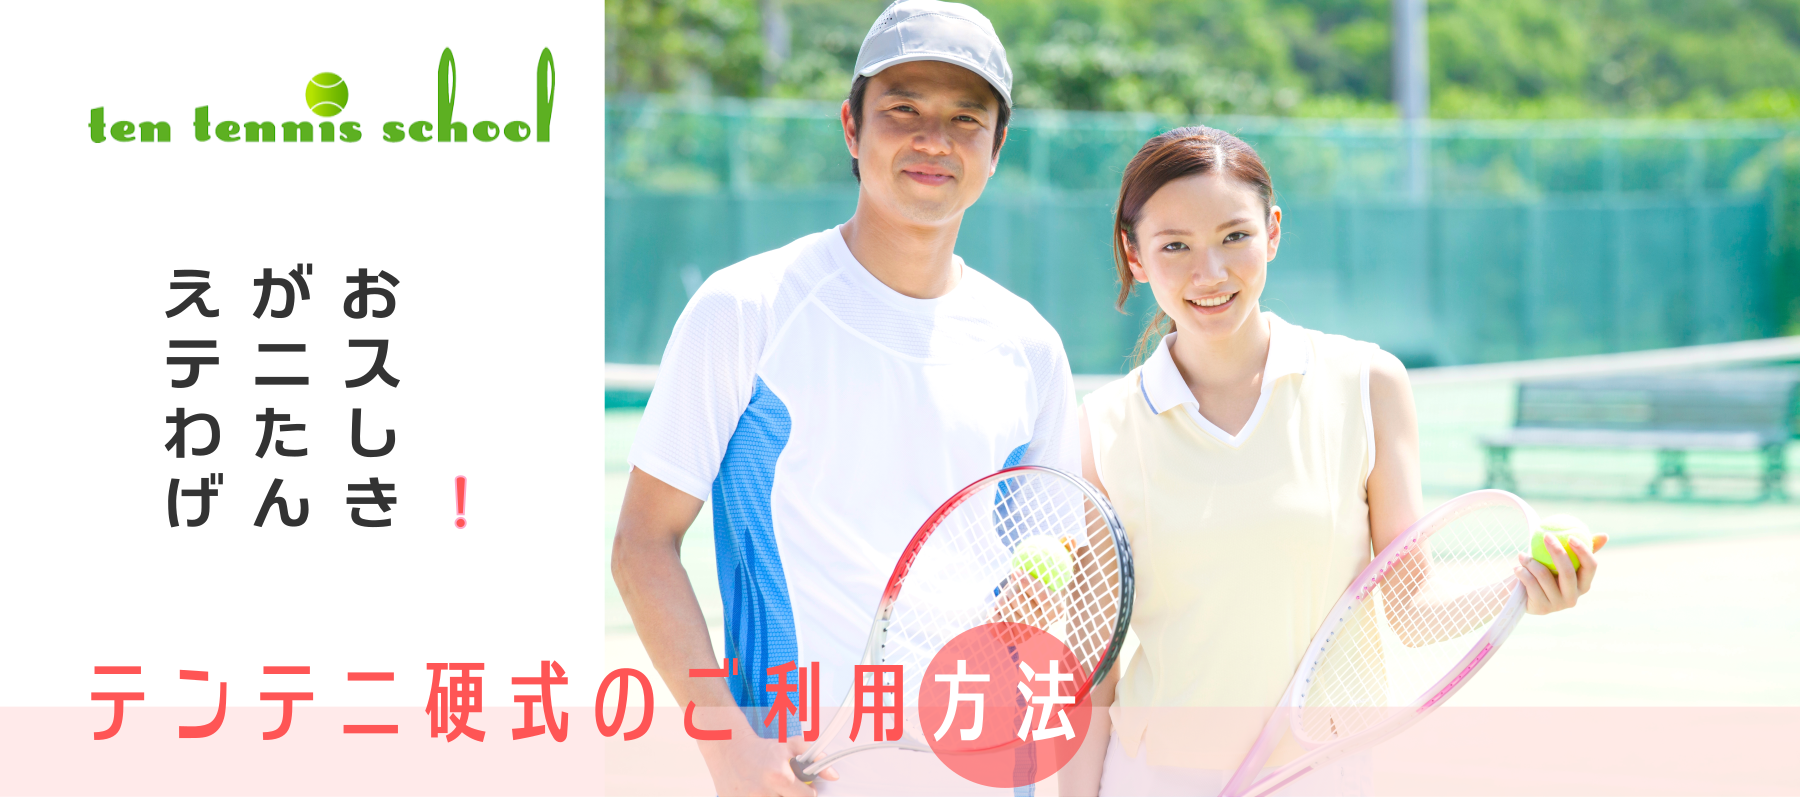 愛知高浜のテンテニススクール、硬式大人クラスご利用方法